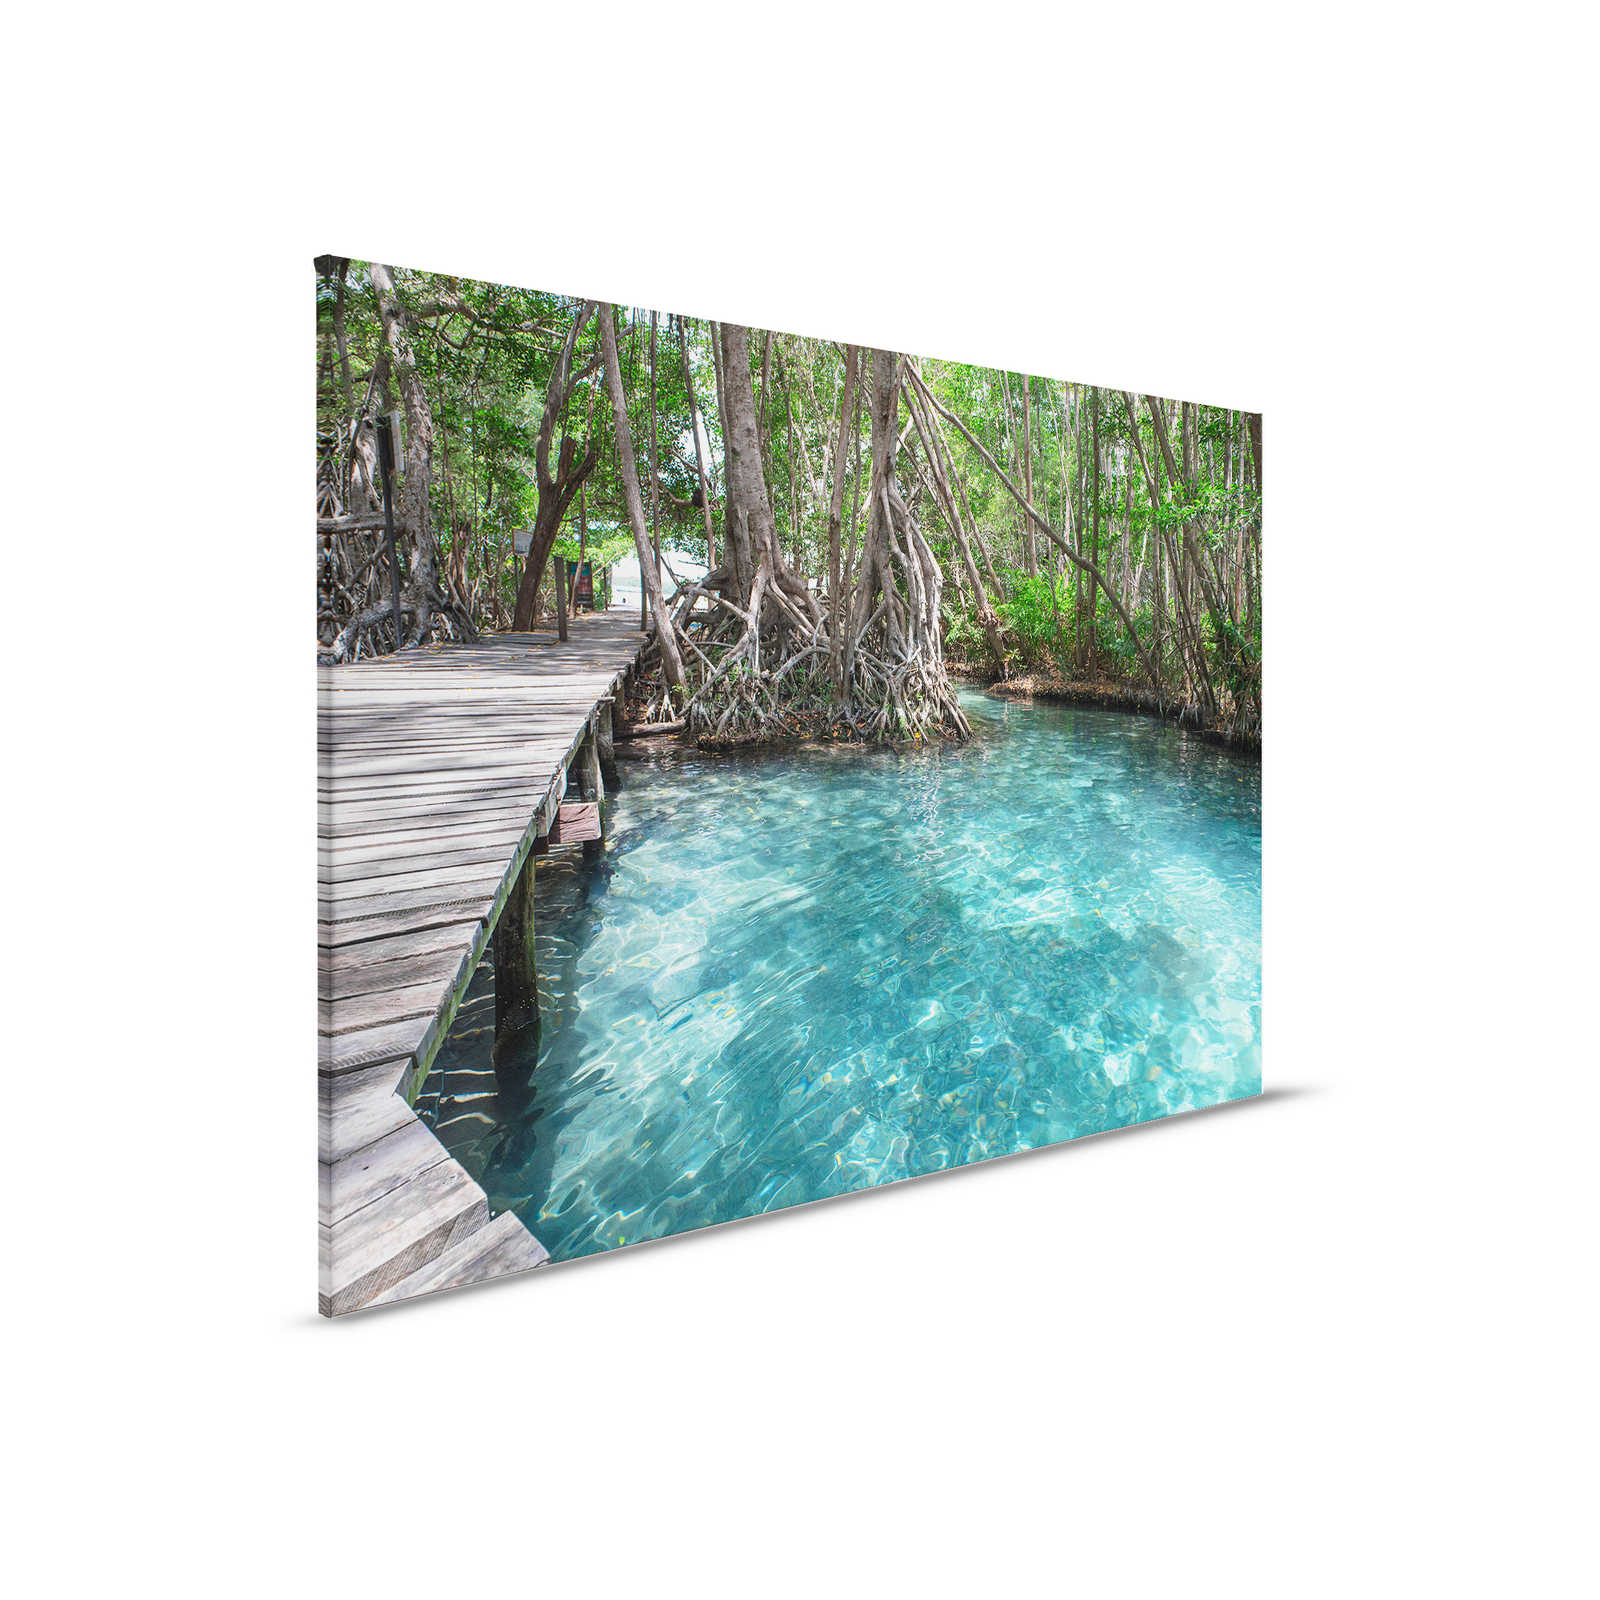         Leinwand mit Holzweg über einen See im Dschungel – 0,90 m x 0,60 m
    